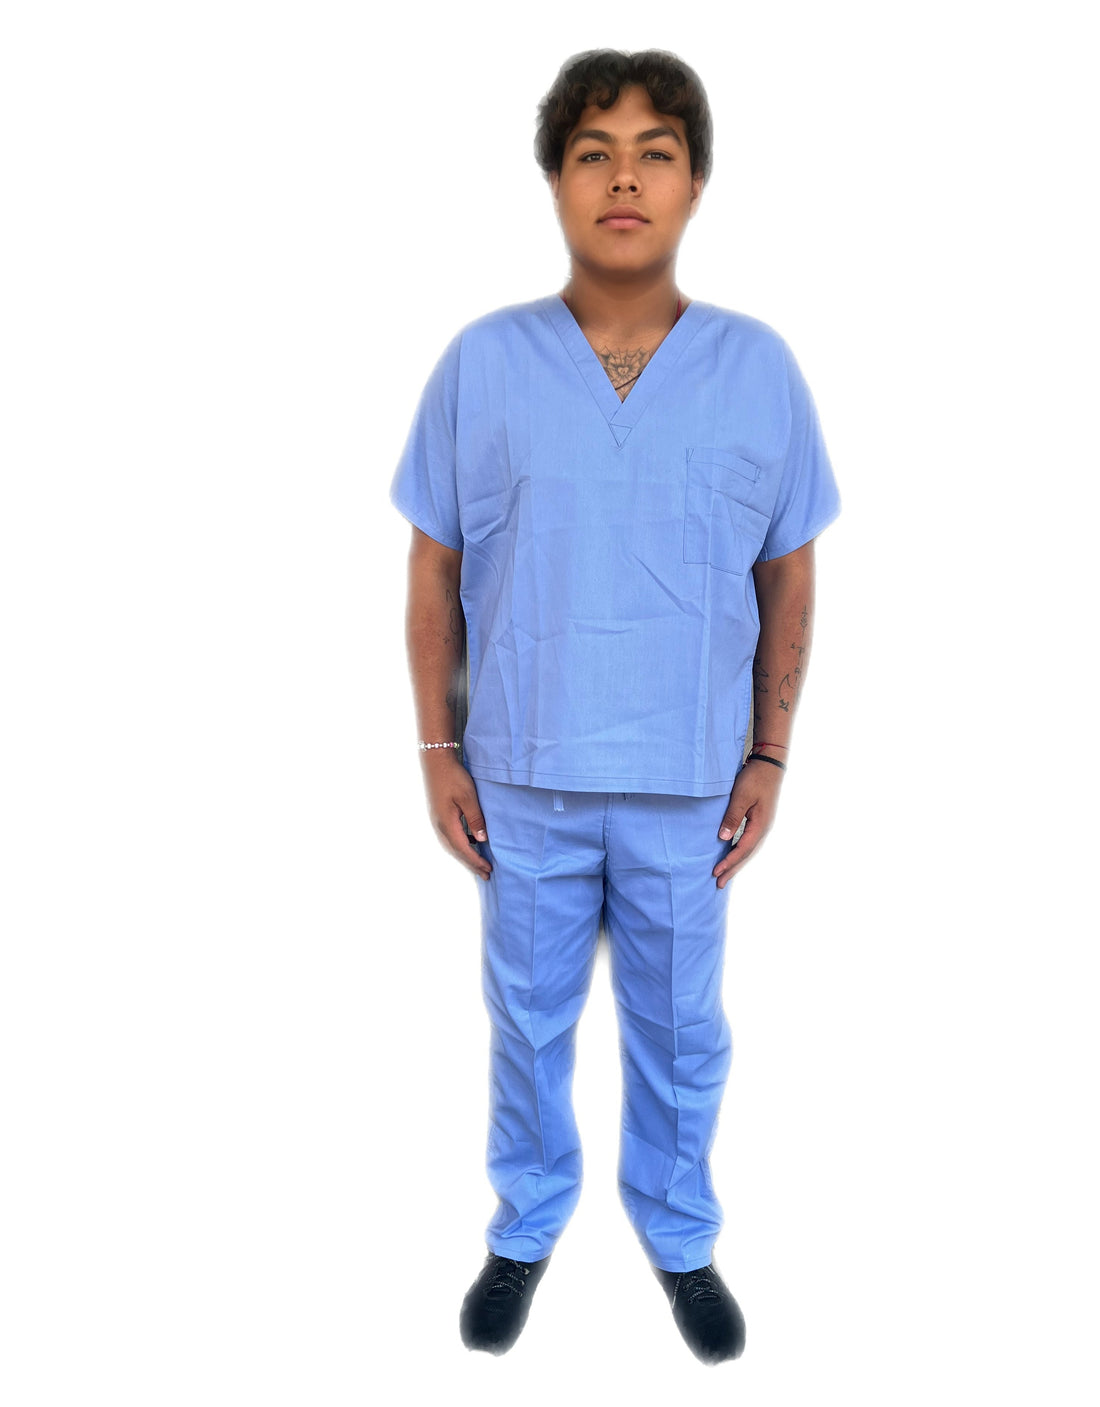 Pijama Quirúrgica de Hombre Uniformes Stanford 65% algodon